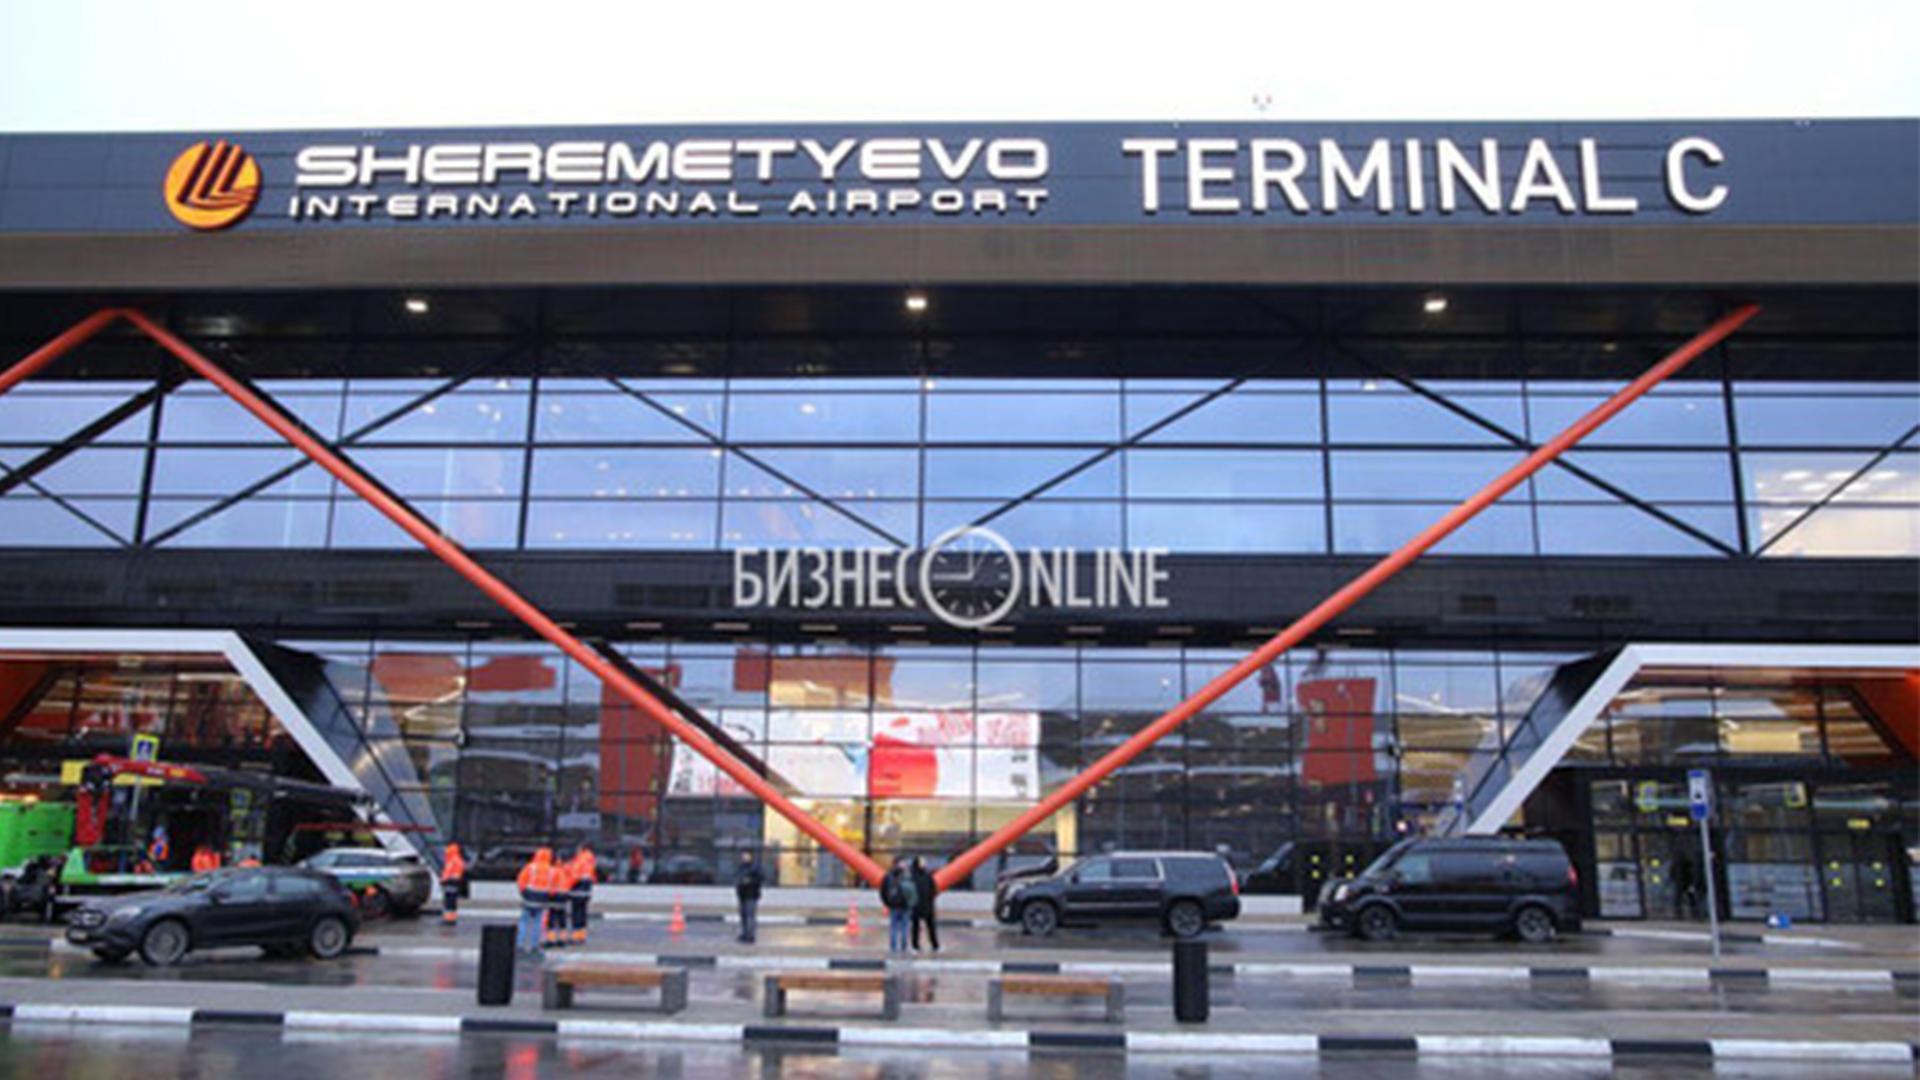 Вход в терминал с. Шереметьево терминал c вид сверху. Шереметьево терминал f. Аэропорт Шереметьево терминал c внутри. Аэропорт Шереметьево внутри терминал б.